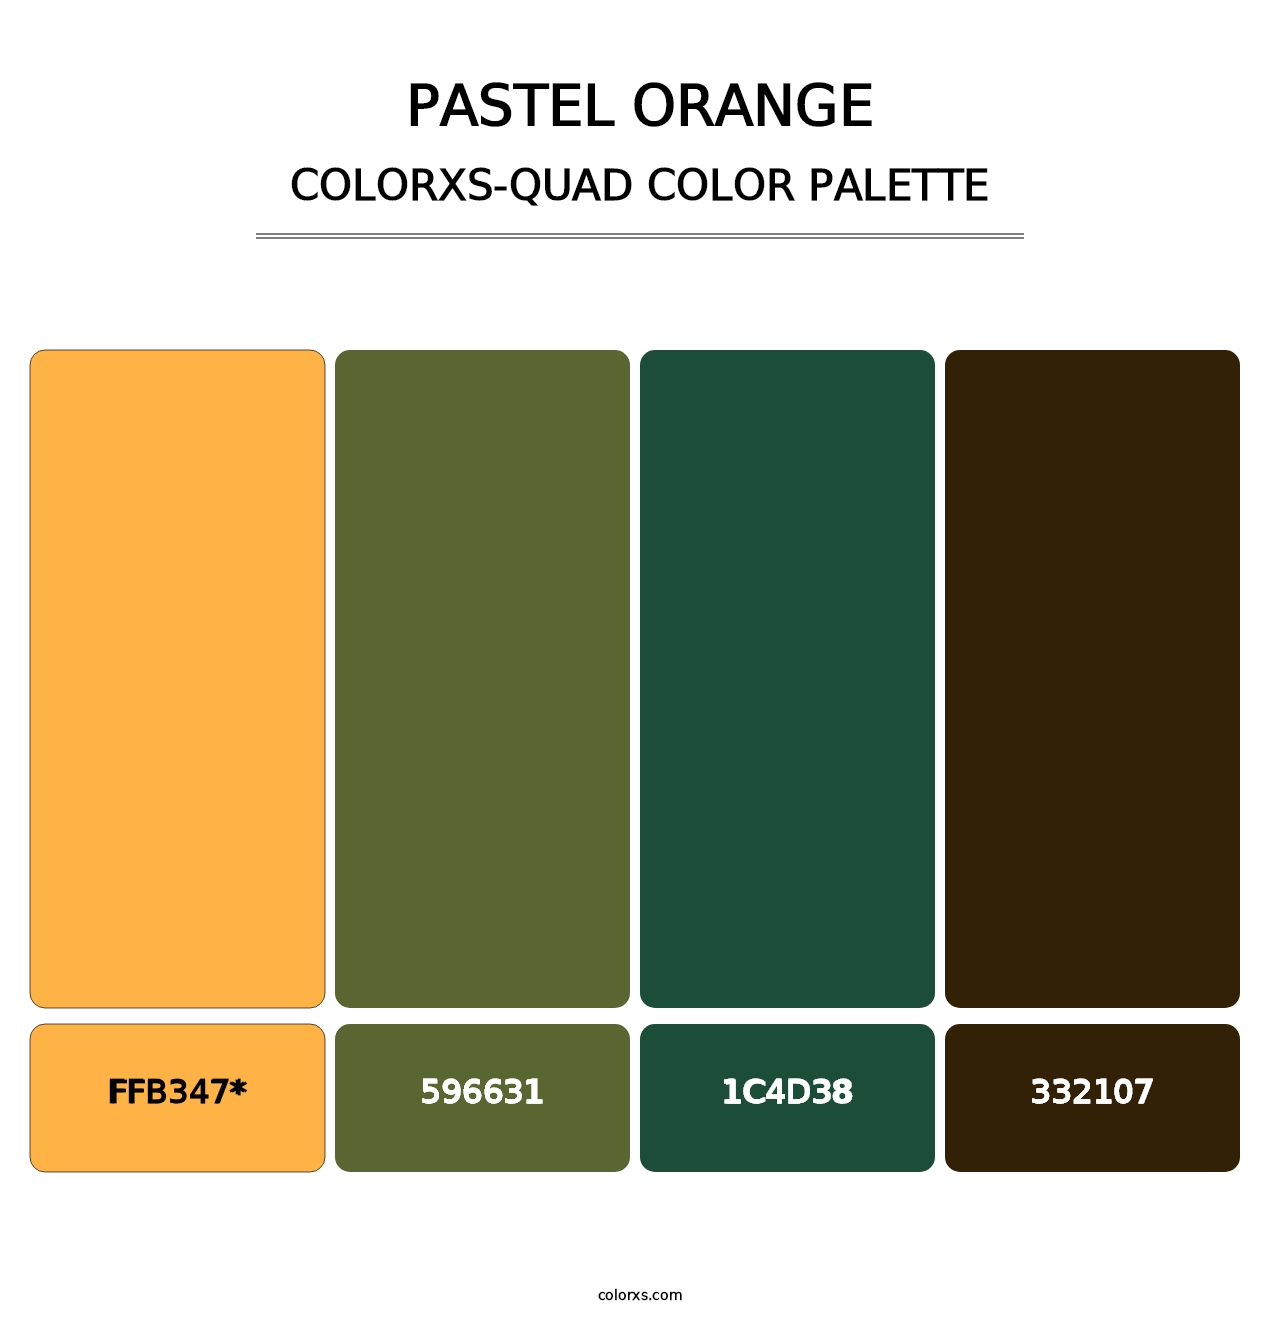 Pastel Orange - Colorxs Quad Palette